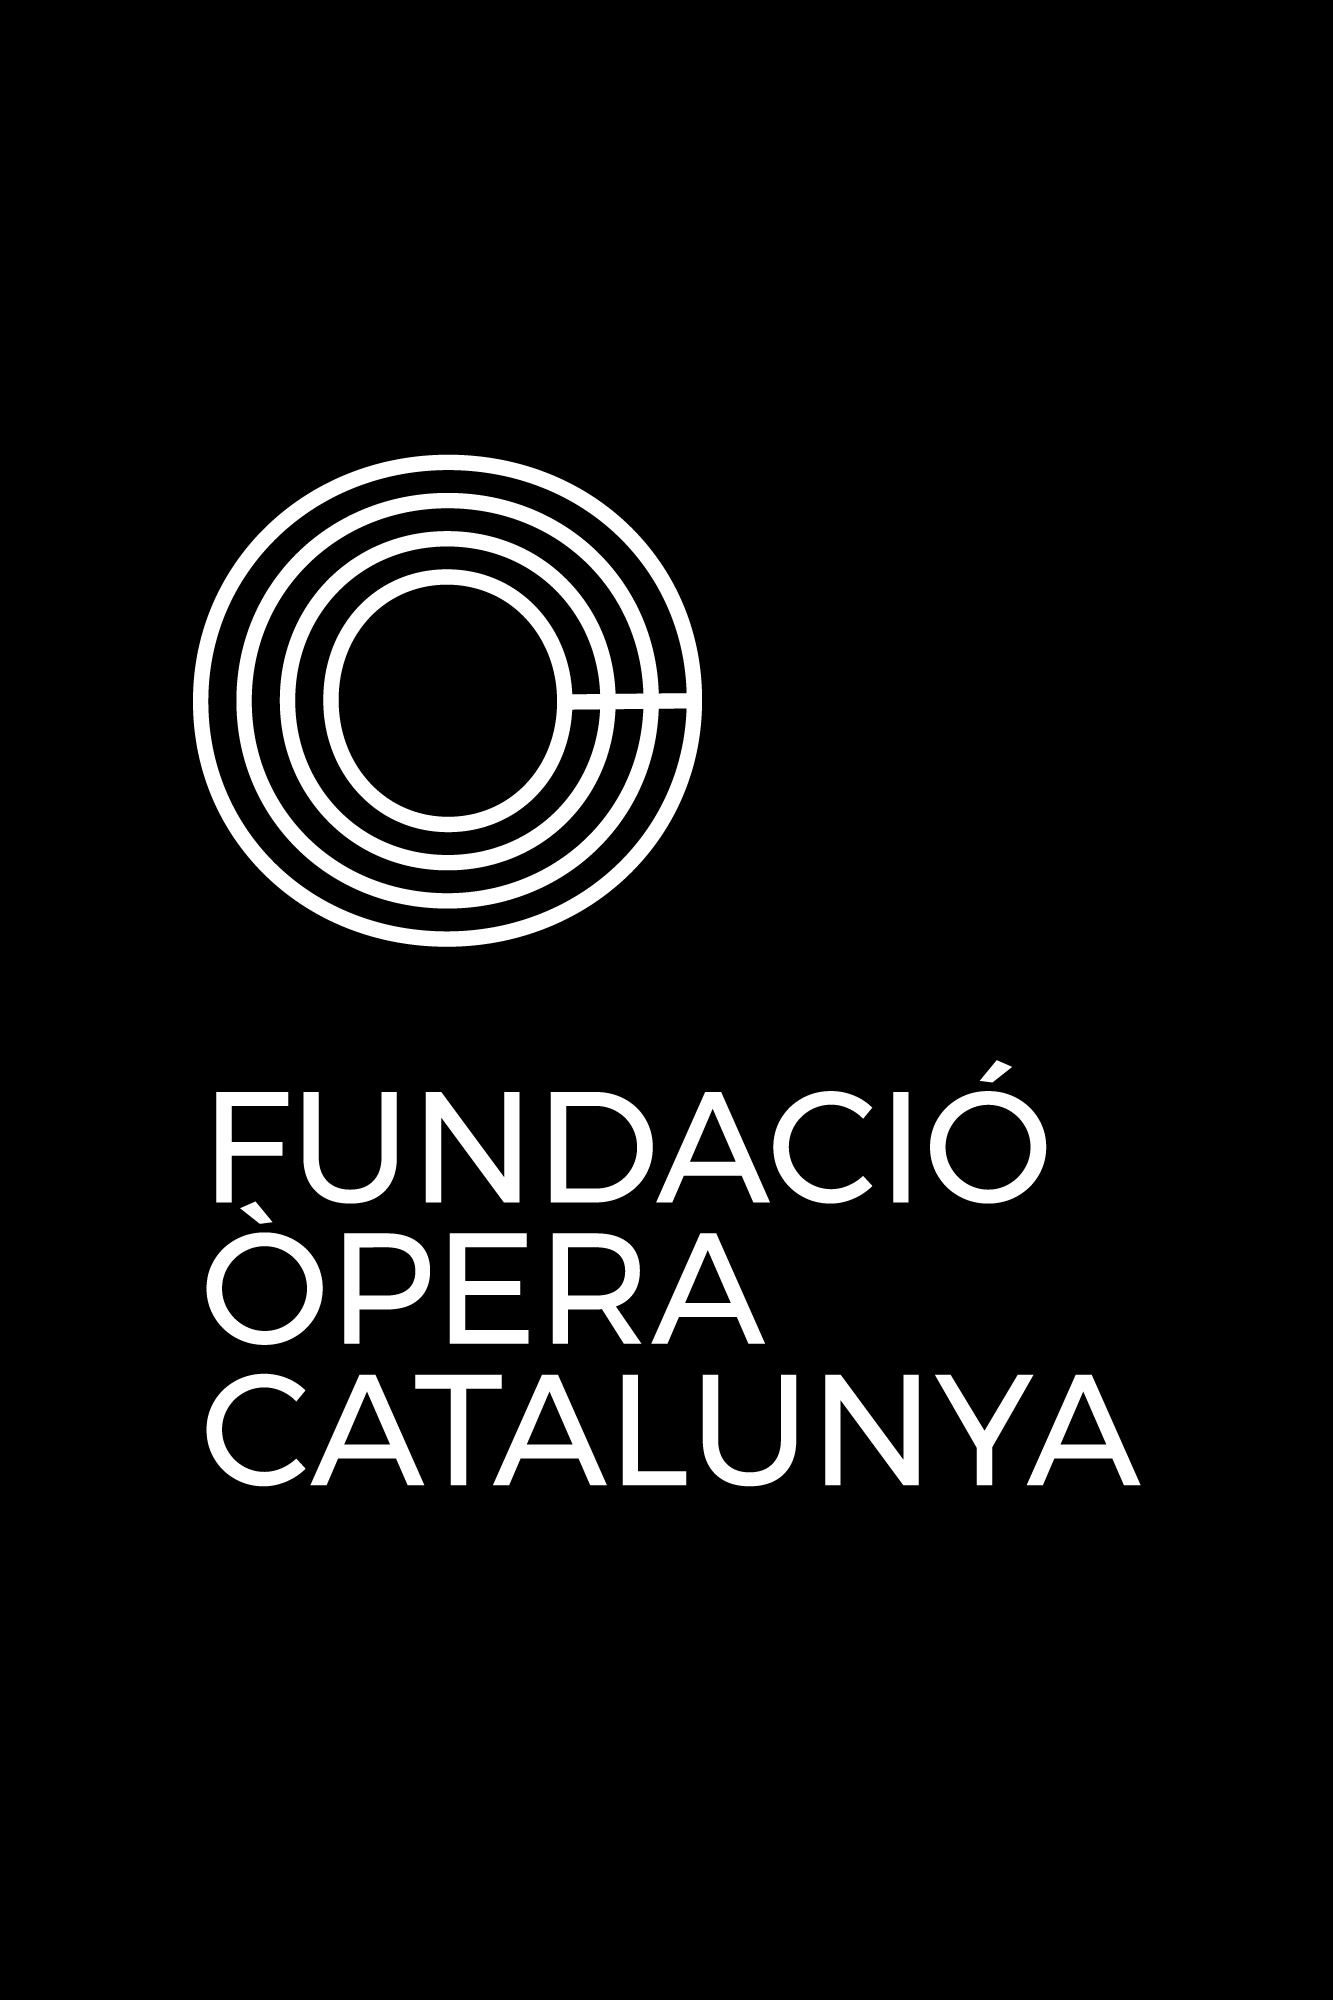 Diseño de logotipo, editorial y campanya de publicidad para la Fundació Òpera Catalunya, logotipo negativo